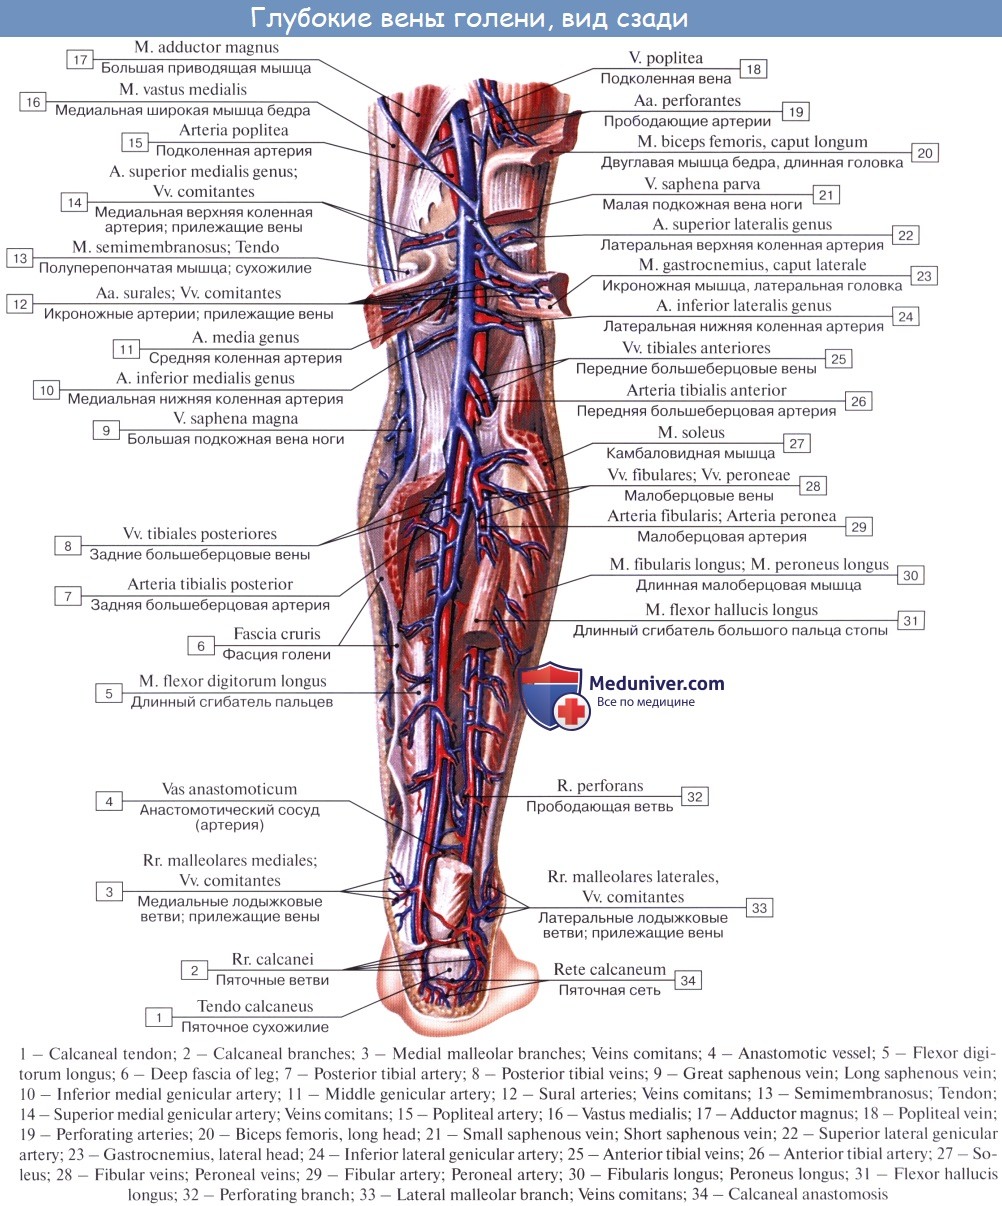 Анатомия вен ноги. Задняя большеберцовая артерия схема. Большеберцовая и малоберцовая артерии. Малоберцовая артерия (a. Fibularis):. Подколенная артерия анатомия ветви.